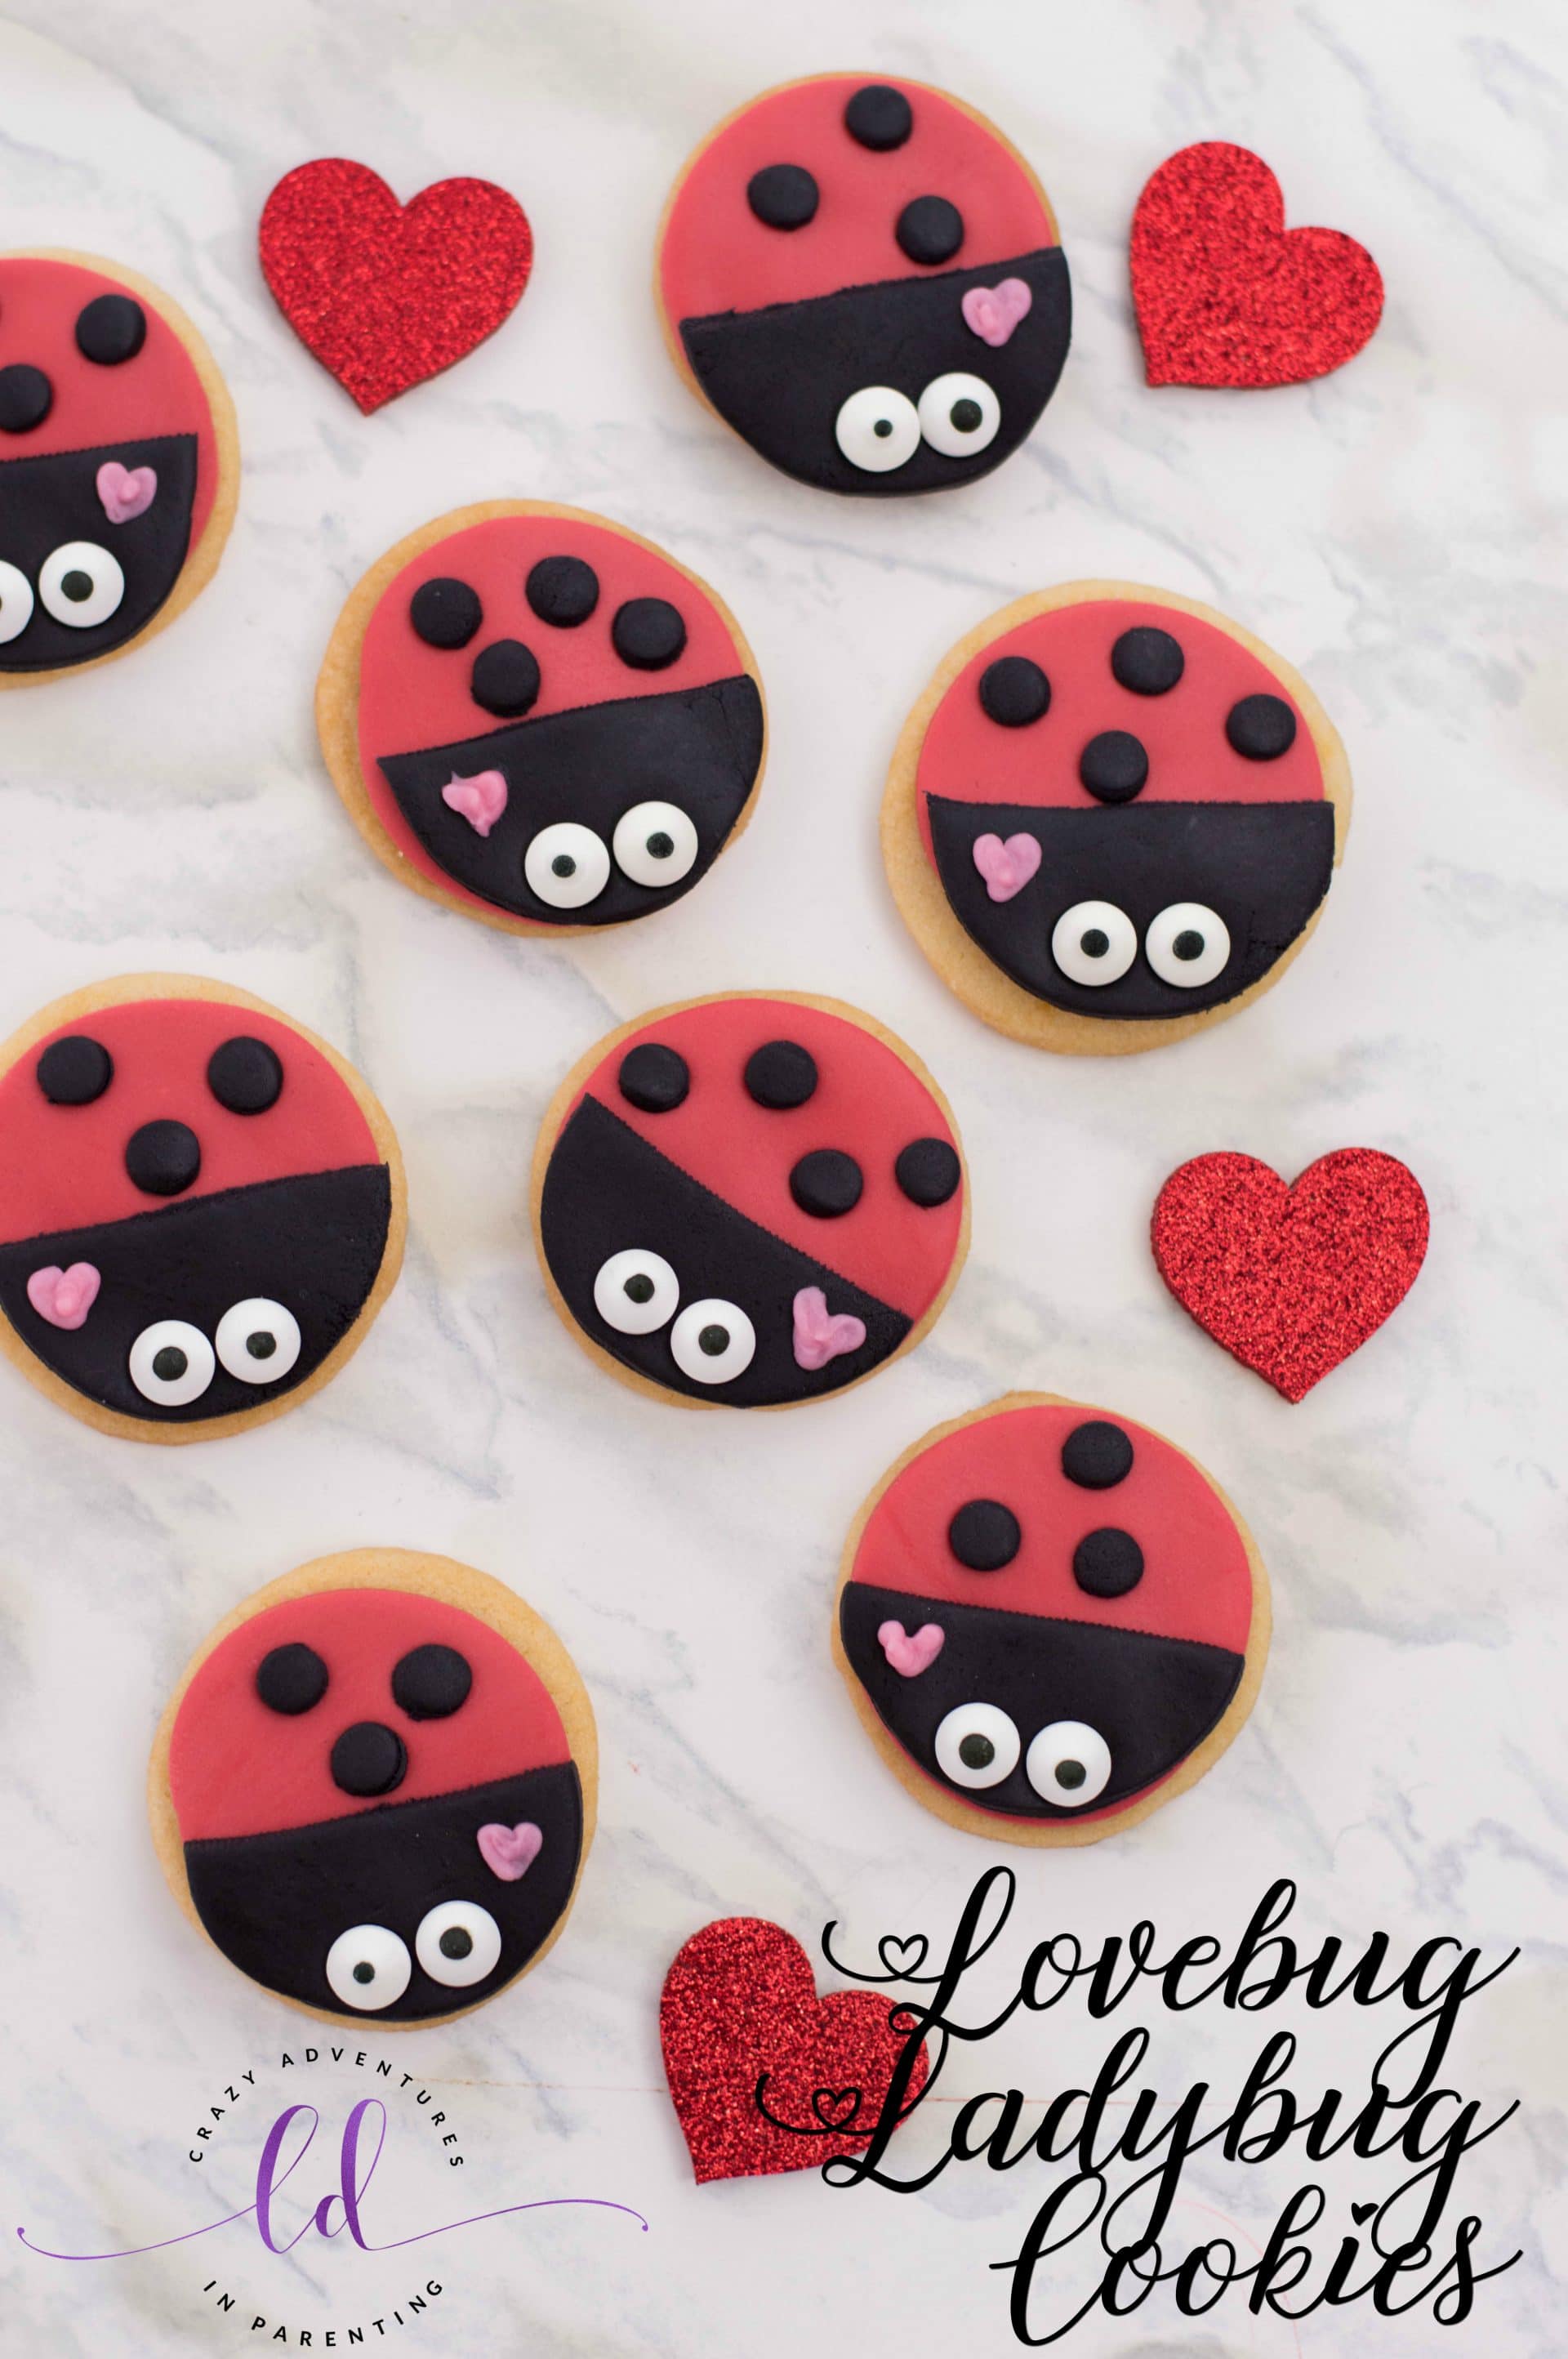 Lovebug Ladybug Cookies